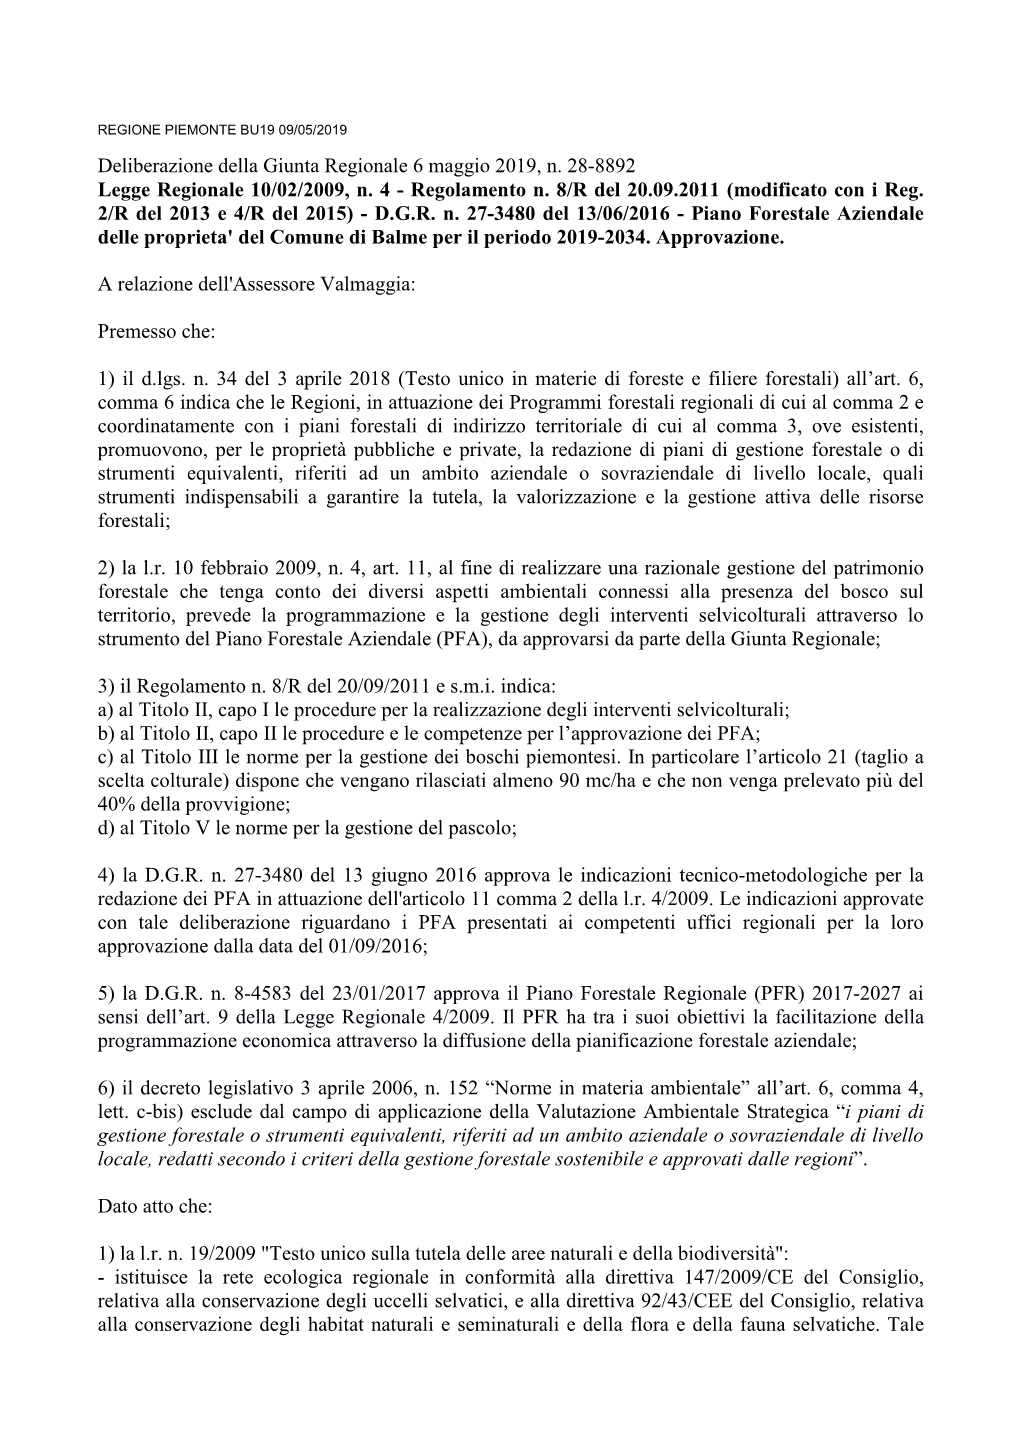 Deliberazione Della Giunta Regionale 6 Maggio 2019, N. 28-8892 Legge Regionale 10/02/2009, N. 4 - Regolamento N